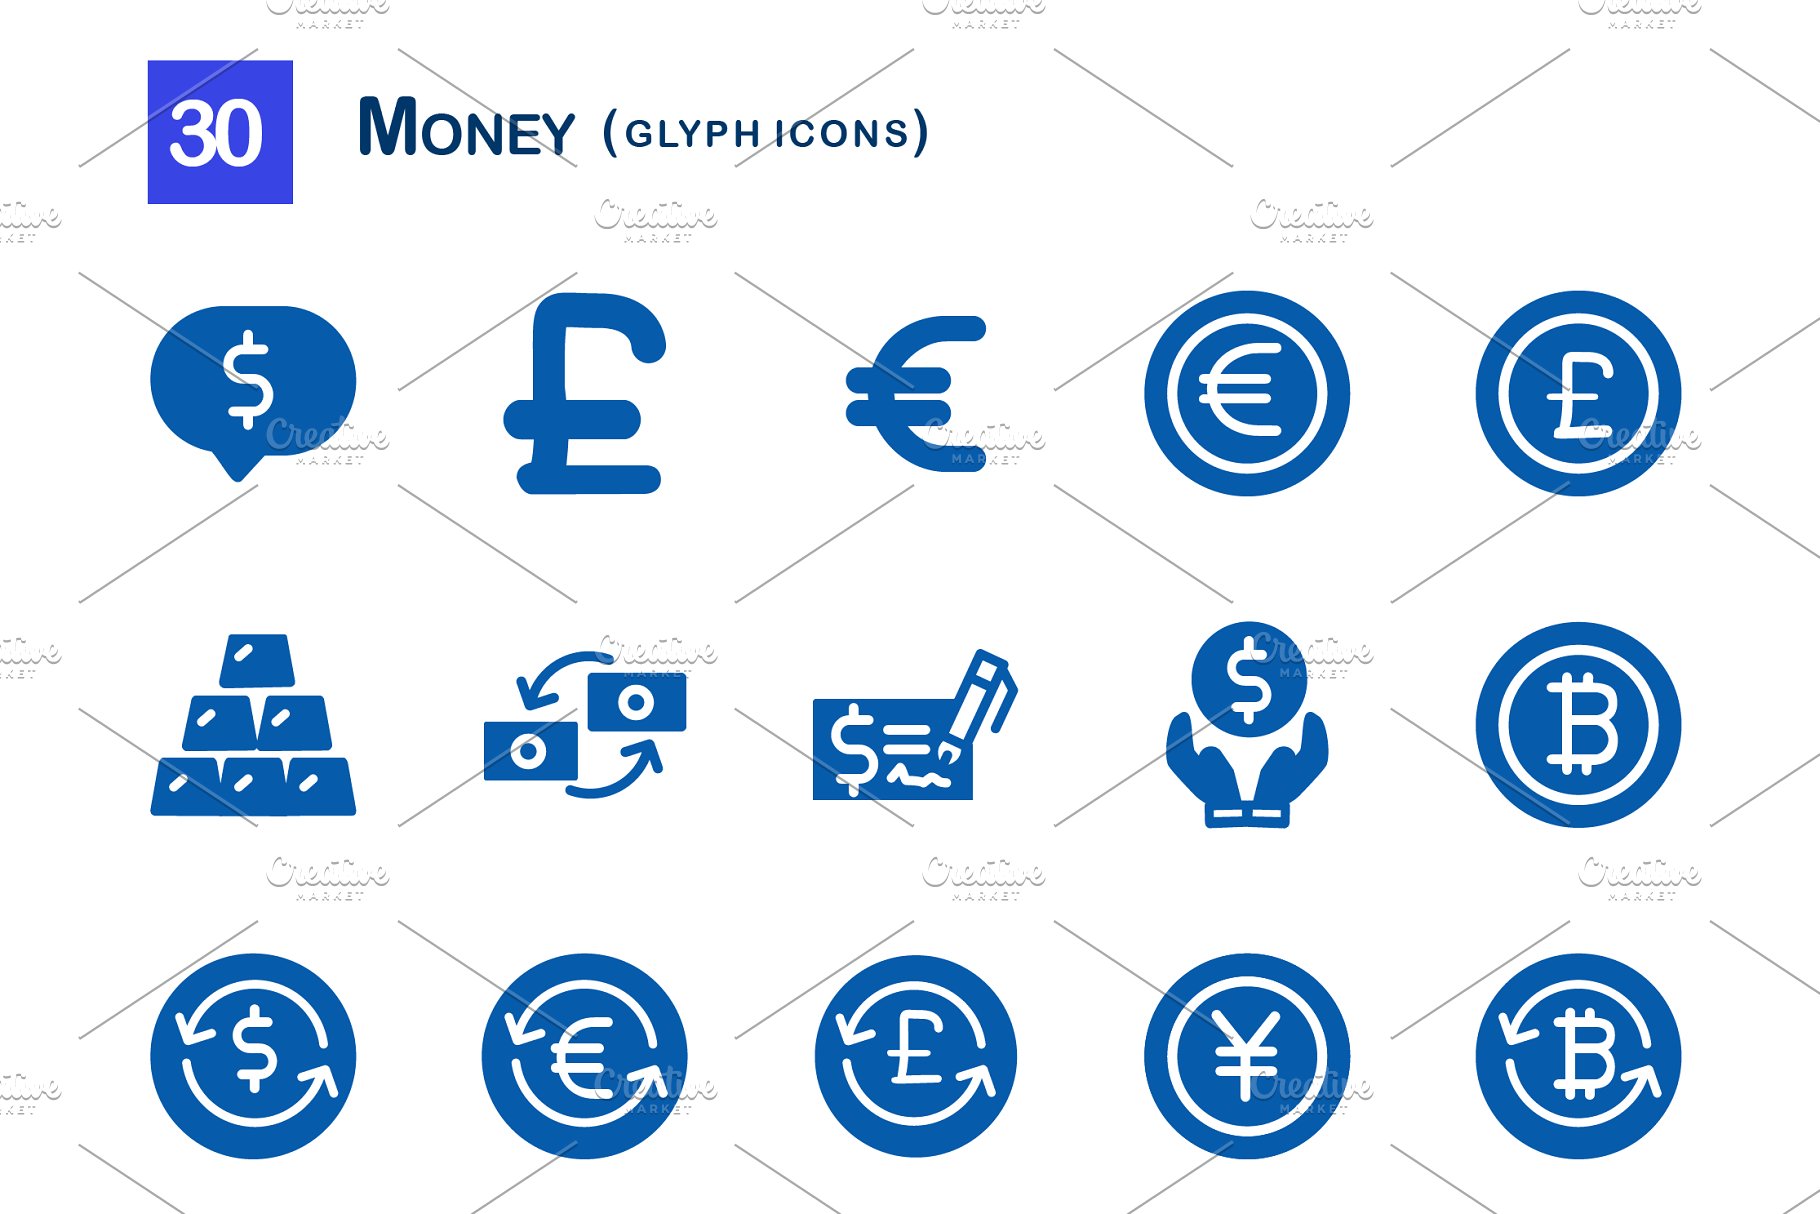 钱相关的图标 30 money glyph icons